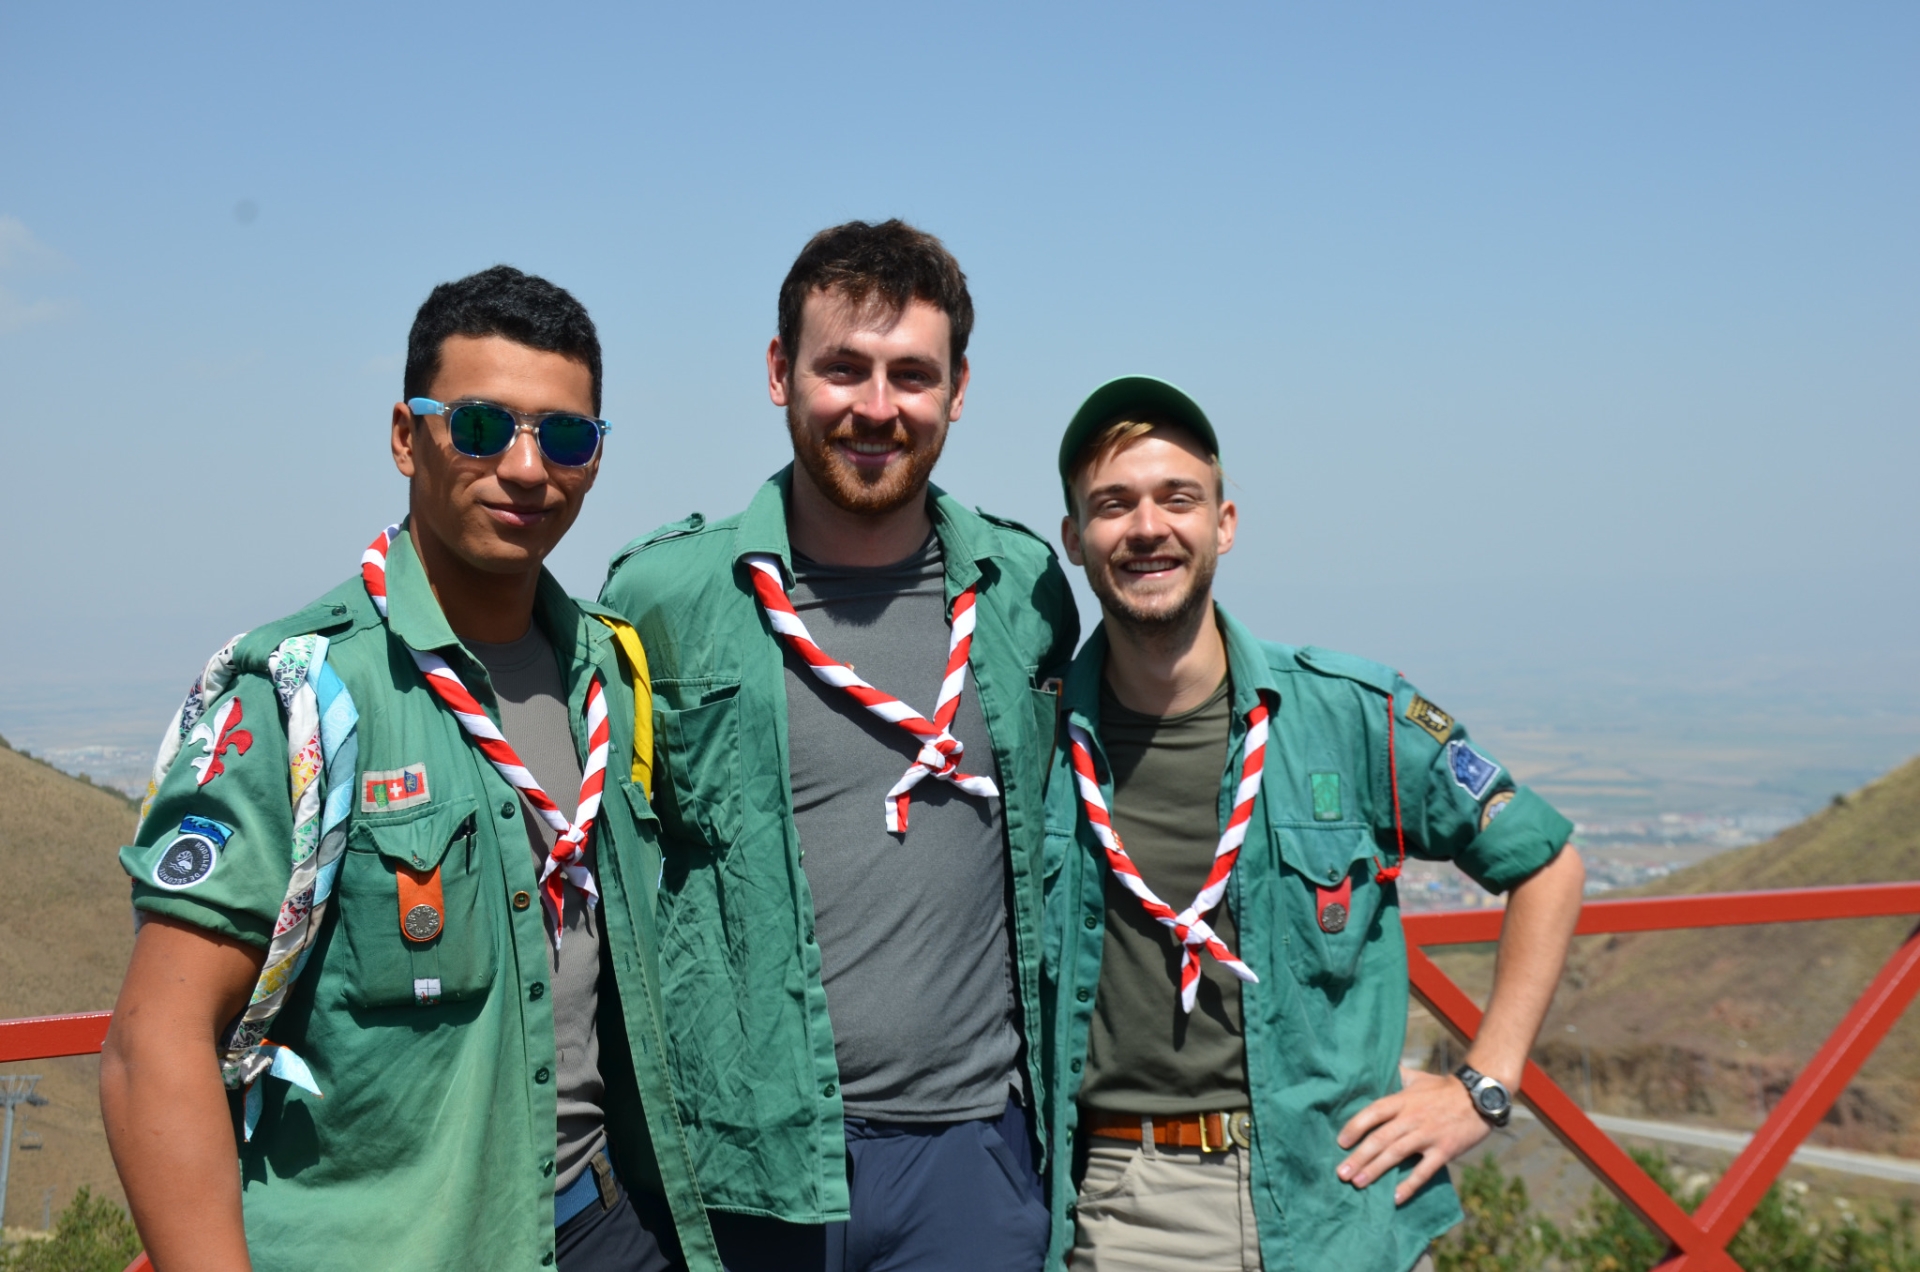 De gauche à droite: Robin Cloux, Maxime Lievens et Sébastien Zufferey, juste avant le départ de leur trek en Turquie.